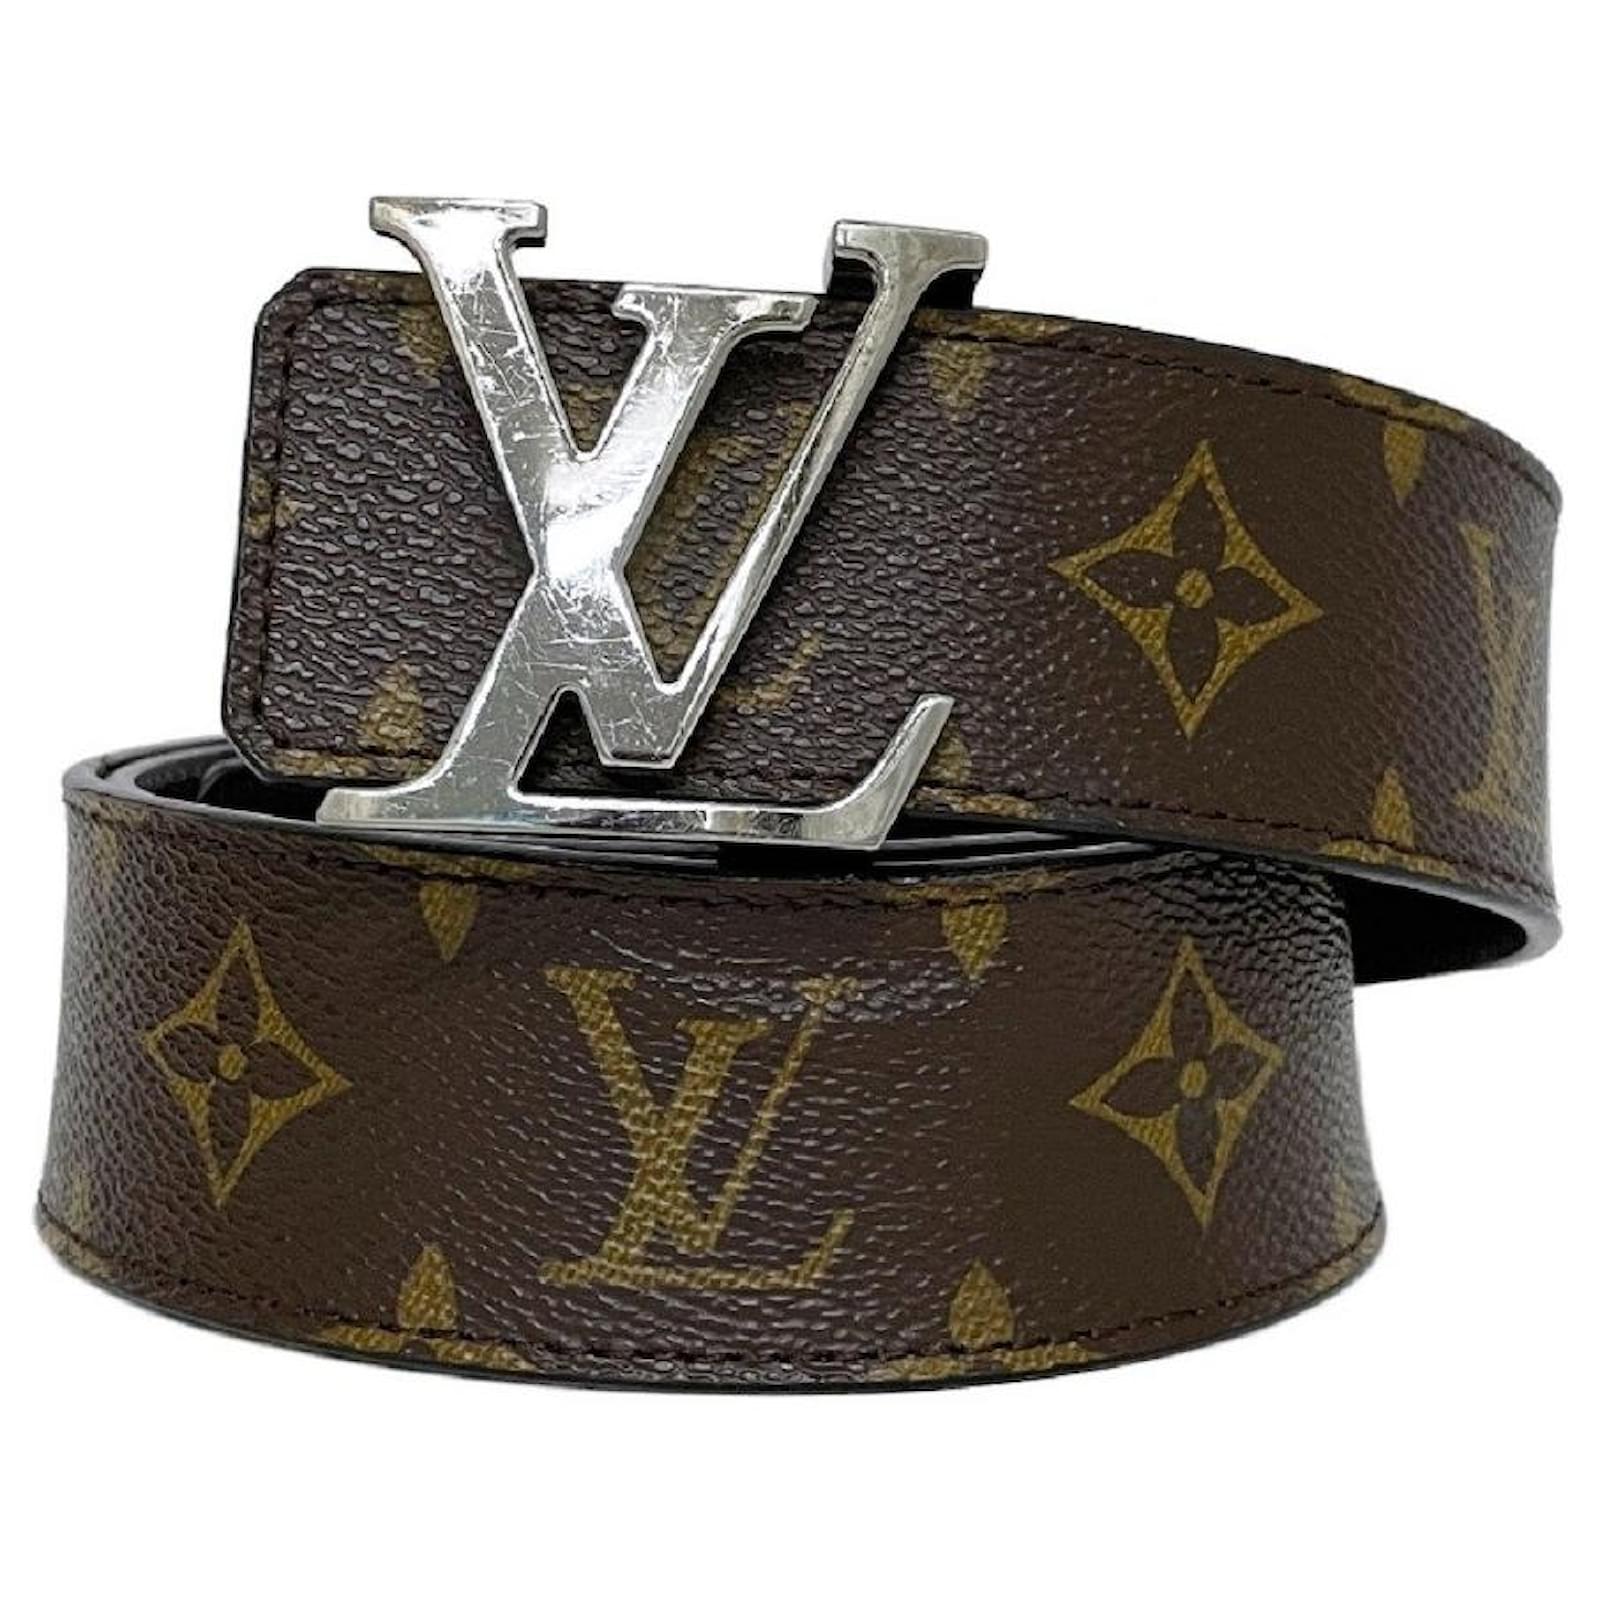 Louis Vuitton Leather Belt